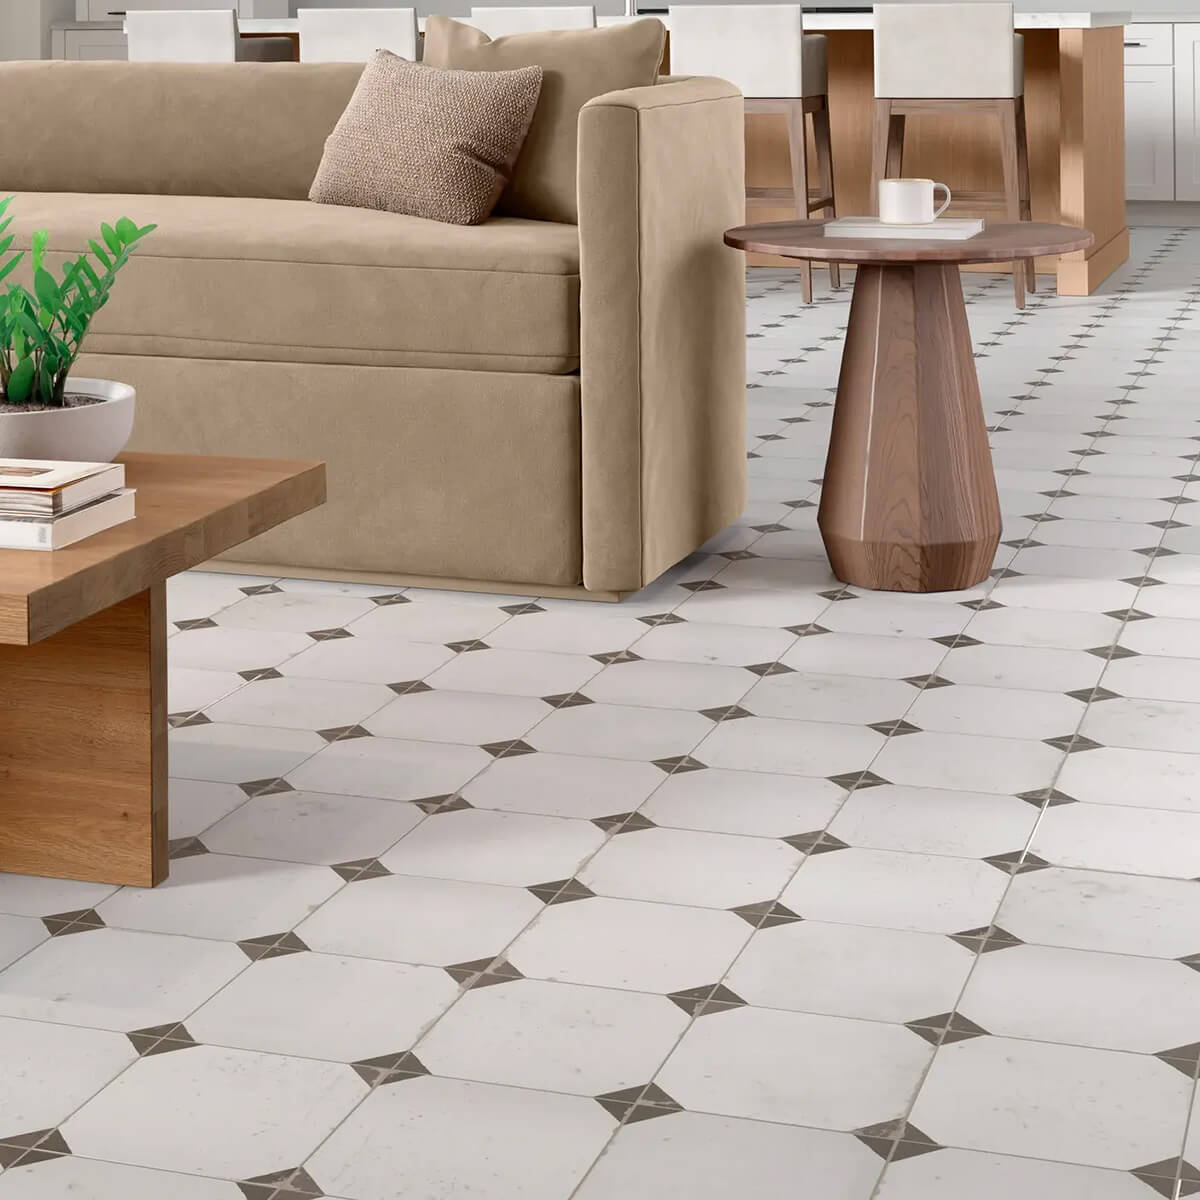 Tile flooring for living area | Star Flooring & Design